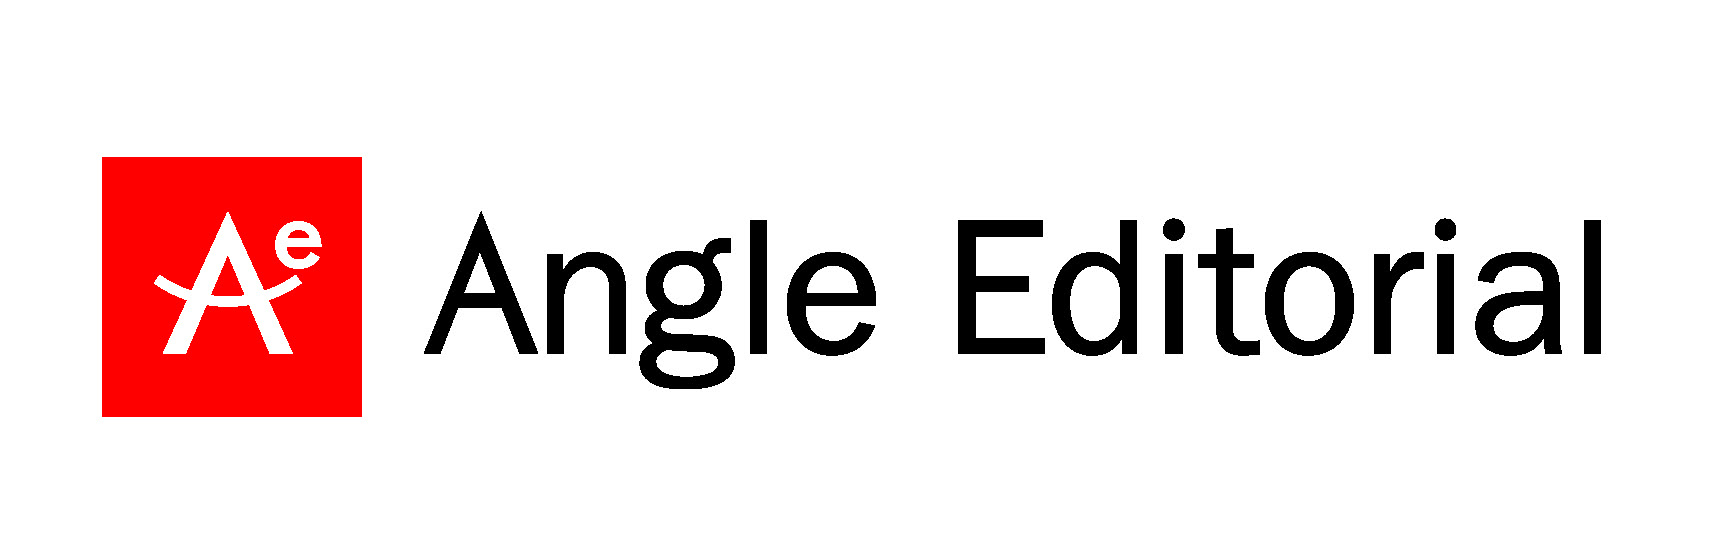 Angle Editorial